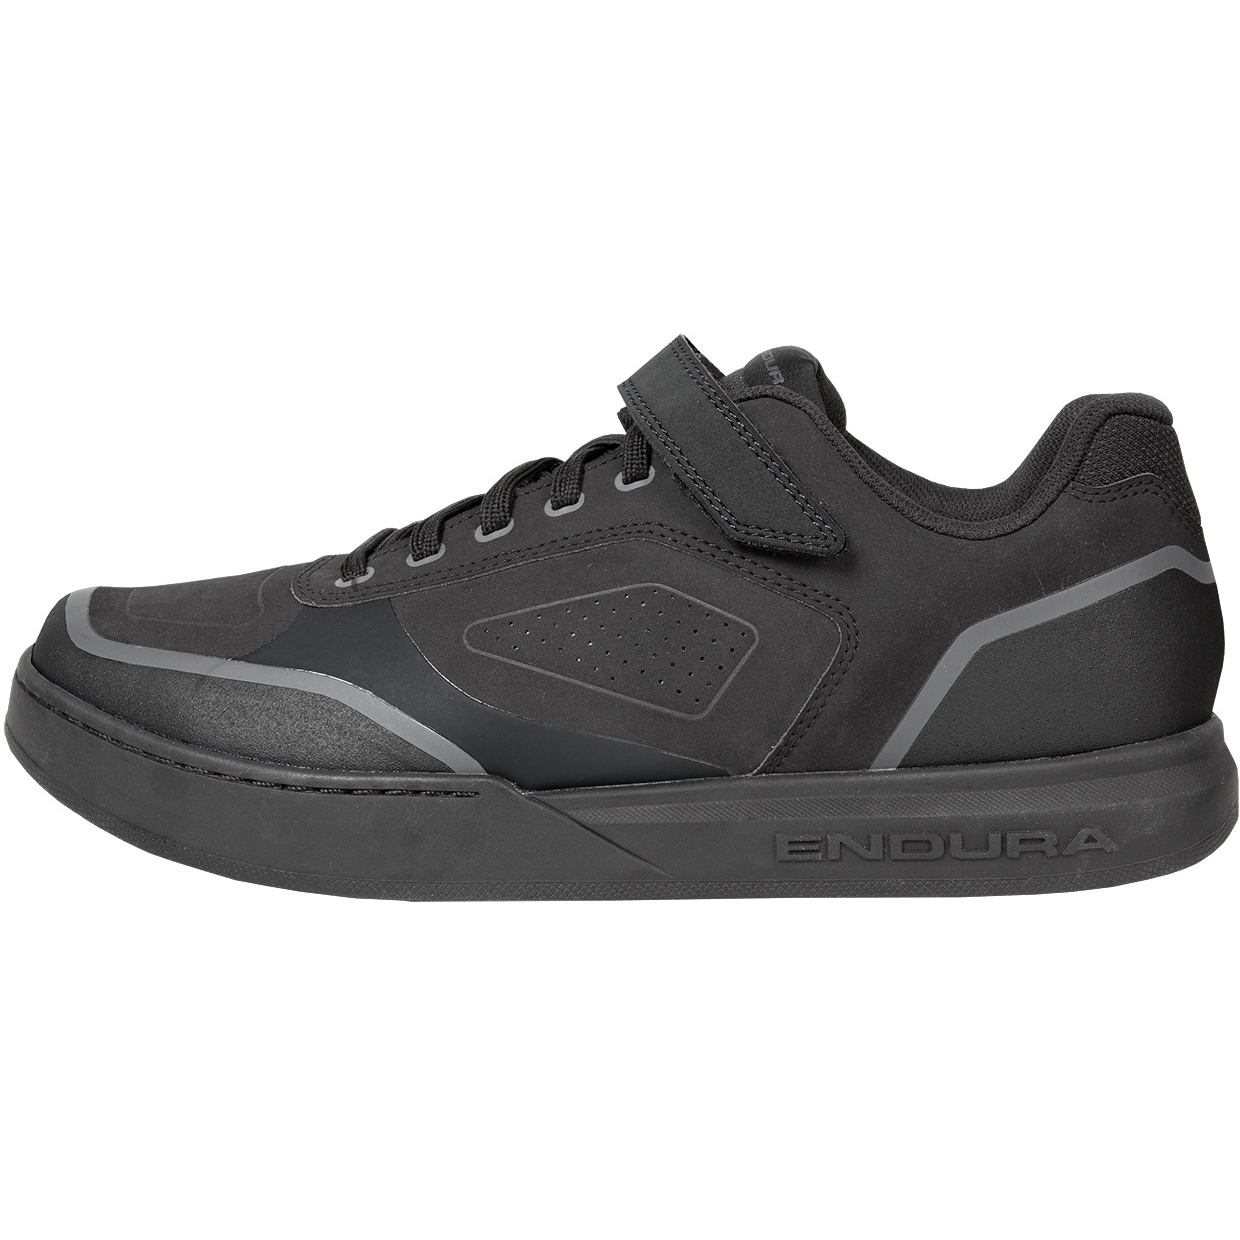 Produktbild von Endura Hummvee Clipless MTB Schuhe - schwarz